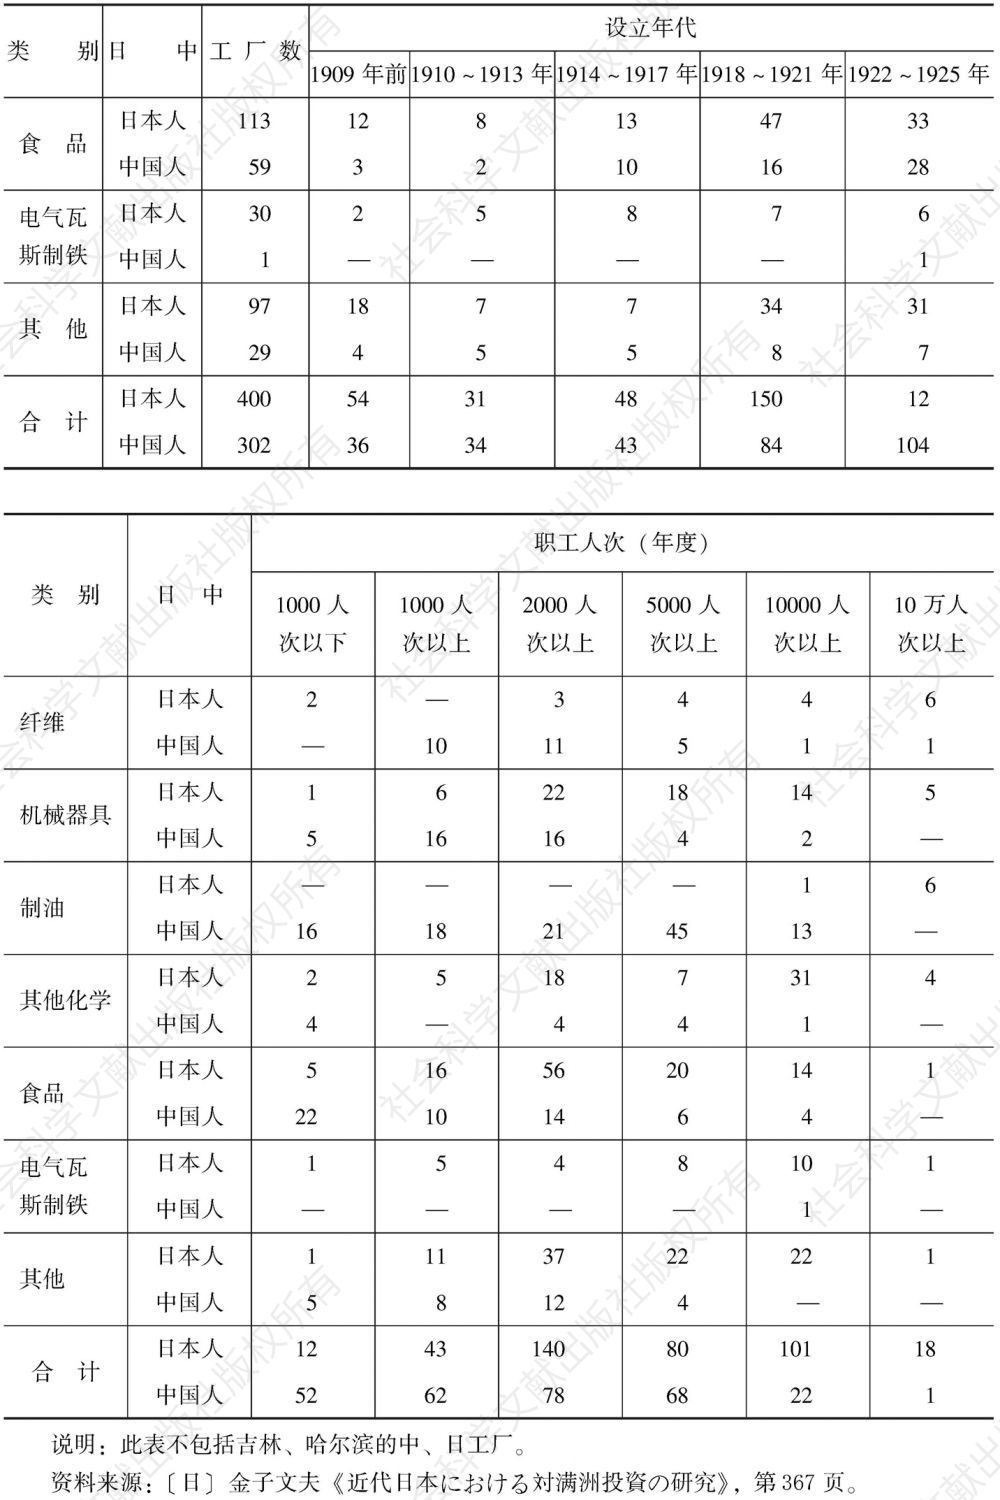 表6-11 中日资本开办企业类别、设立年代、职工人数对比情况（1925年）-续表